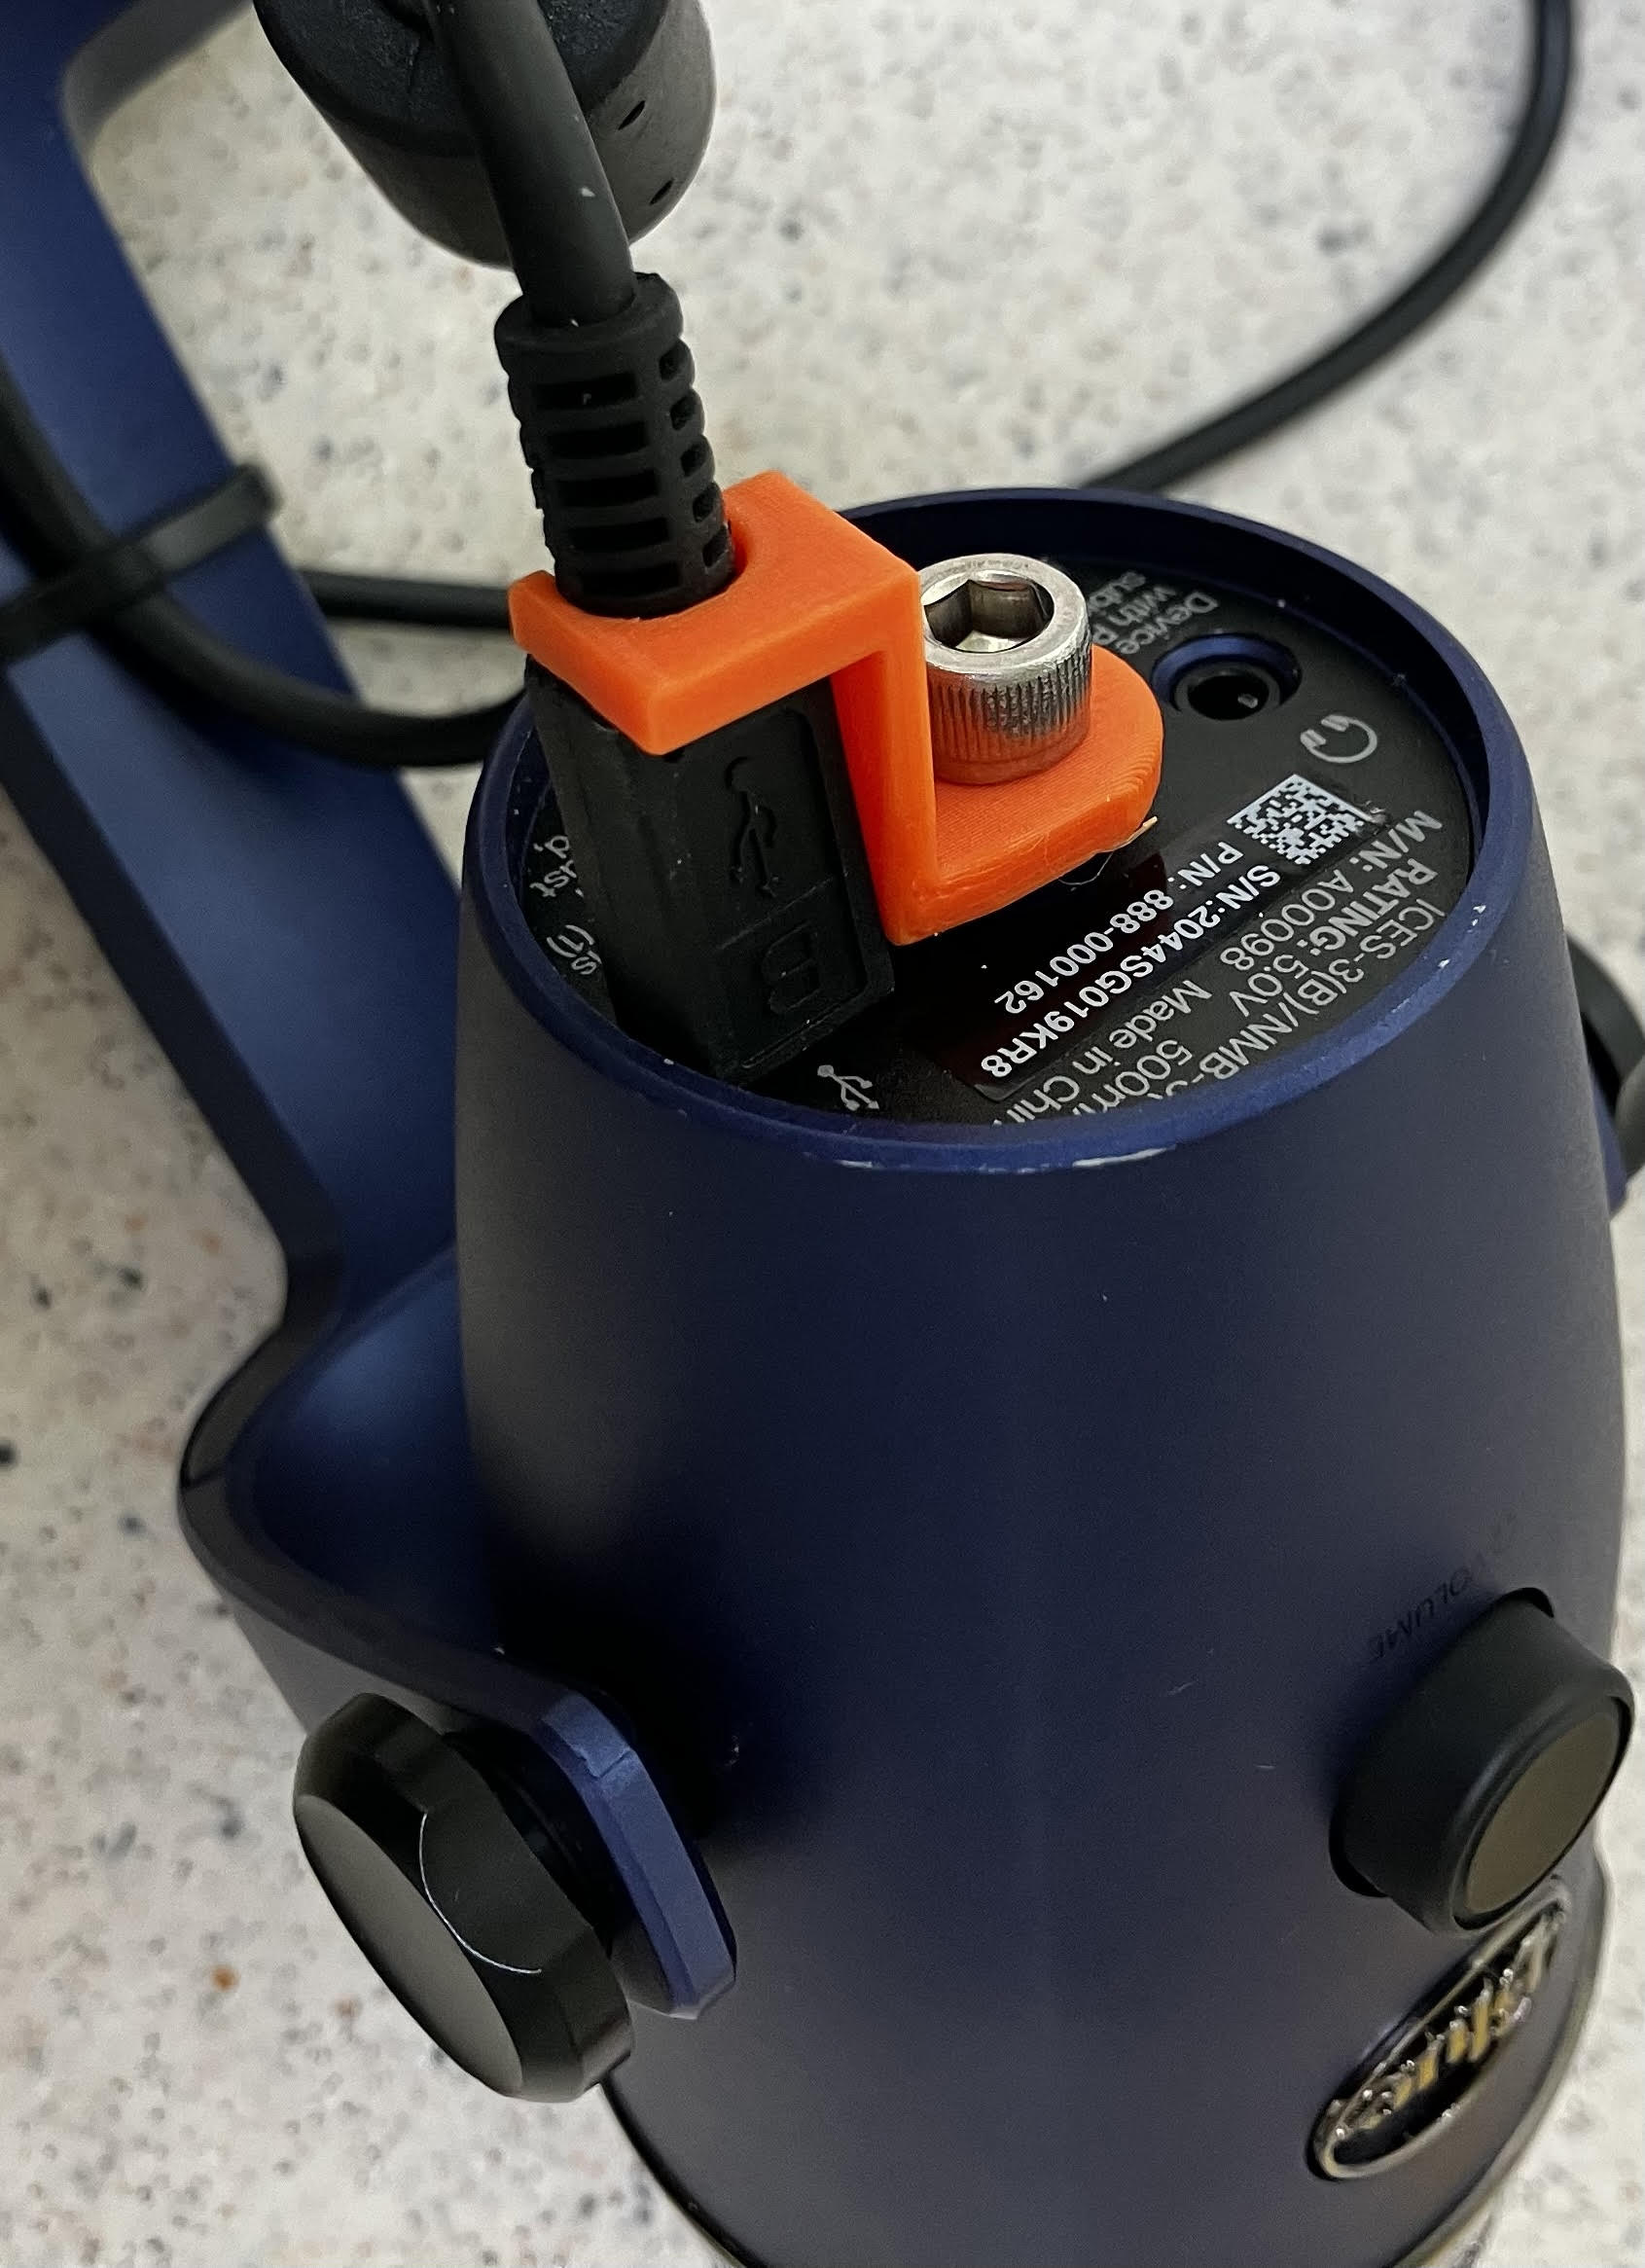 Blue Yeti-Nano USB cable strain relief